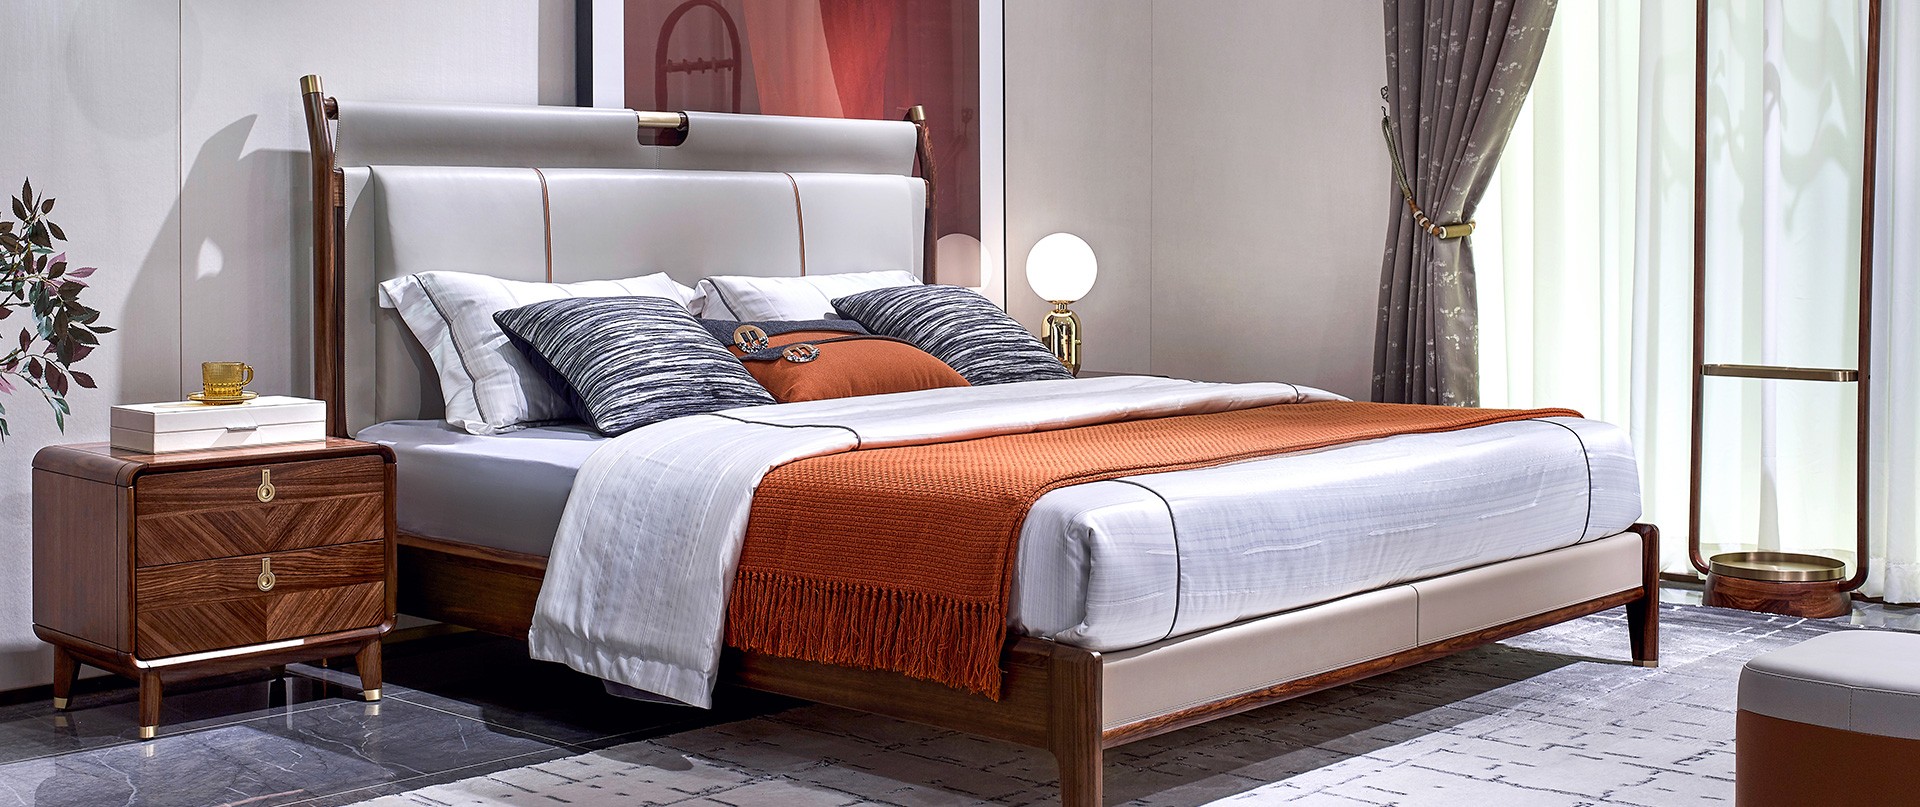 胡桃K卧室效果图-童话森林官网-有点木的 现代高质量家具